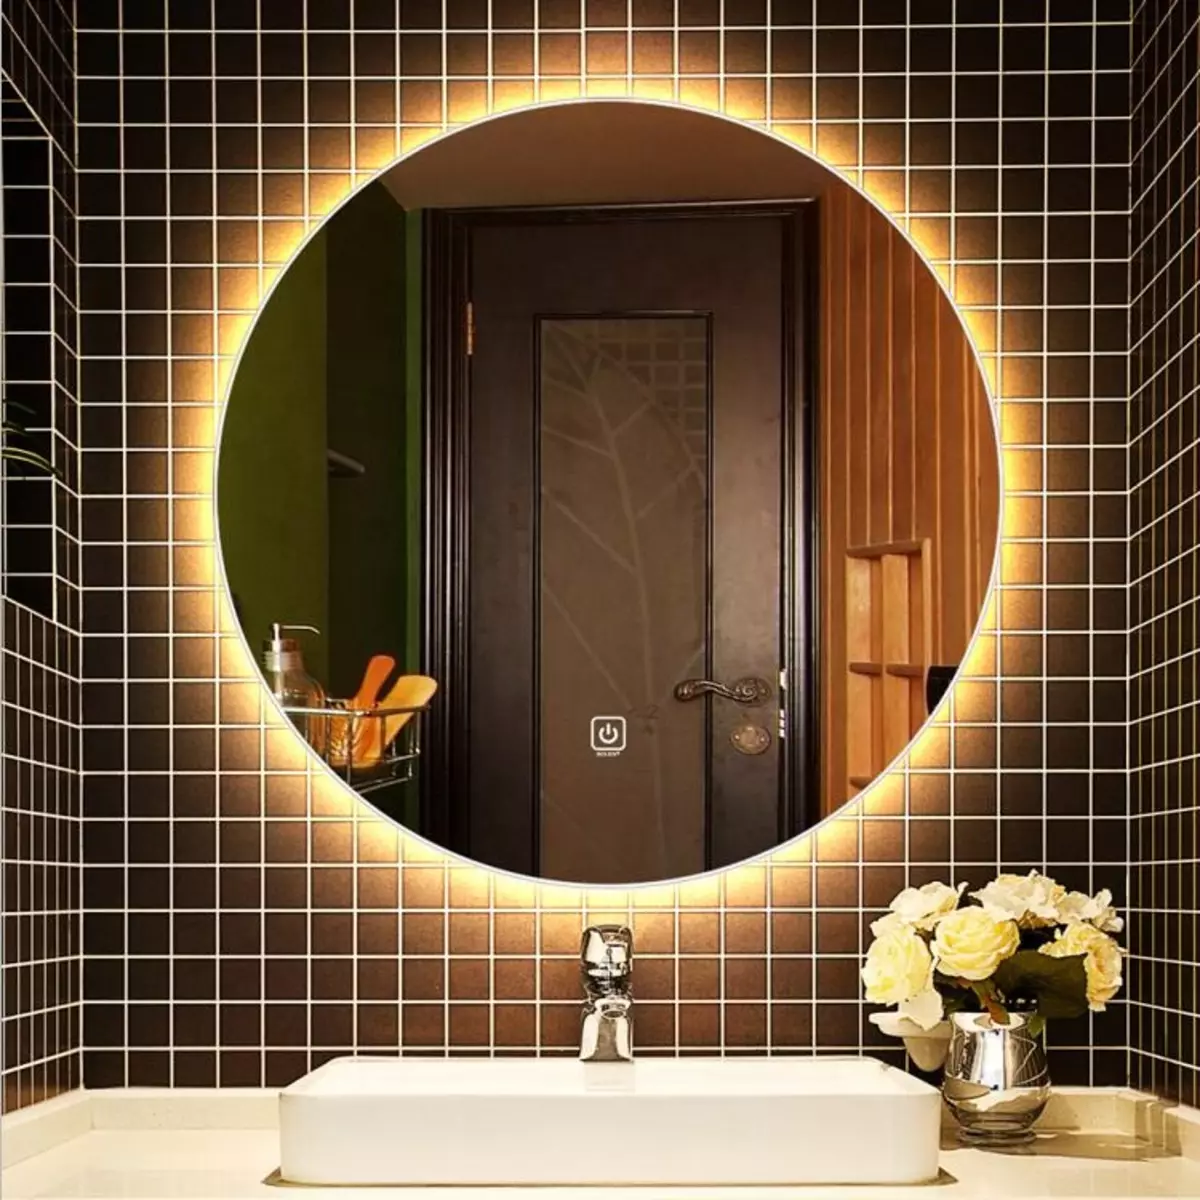 Miroir rond dans la salle de bain: miroirs design dans un cadre en bois, miroirs ronds de couleur noire et autre pour la salle de bain 10427_20